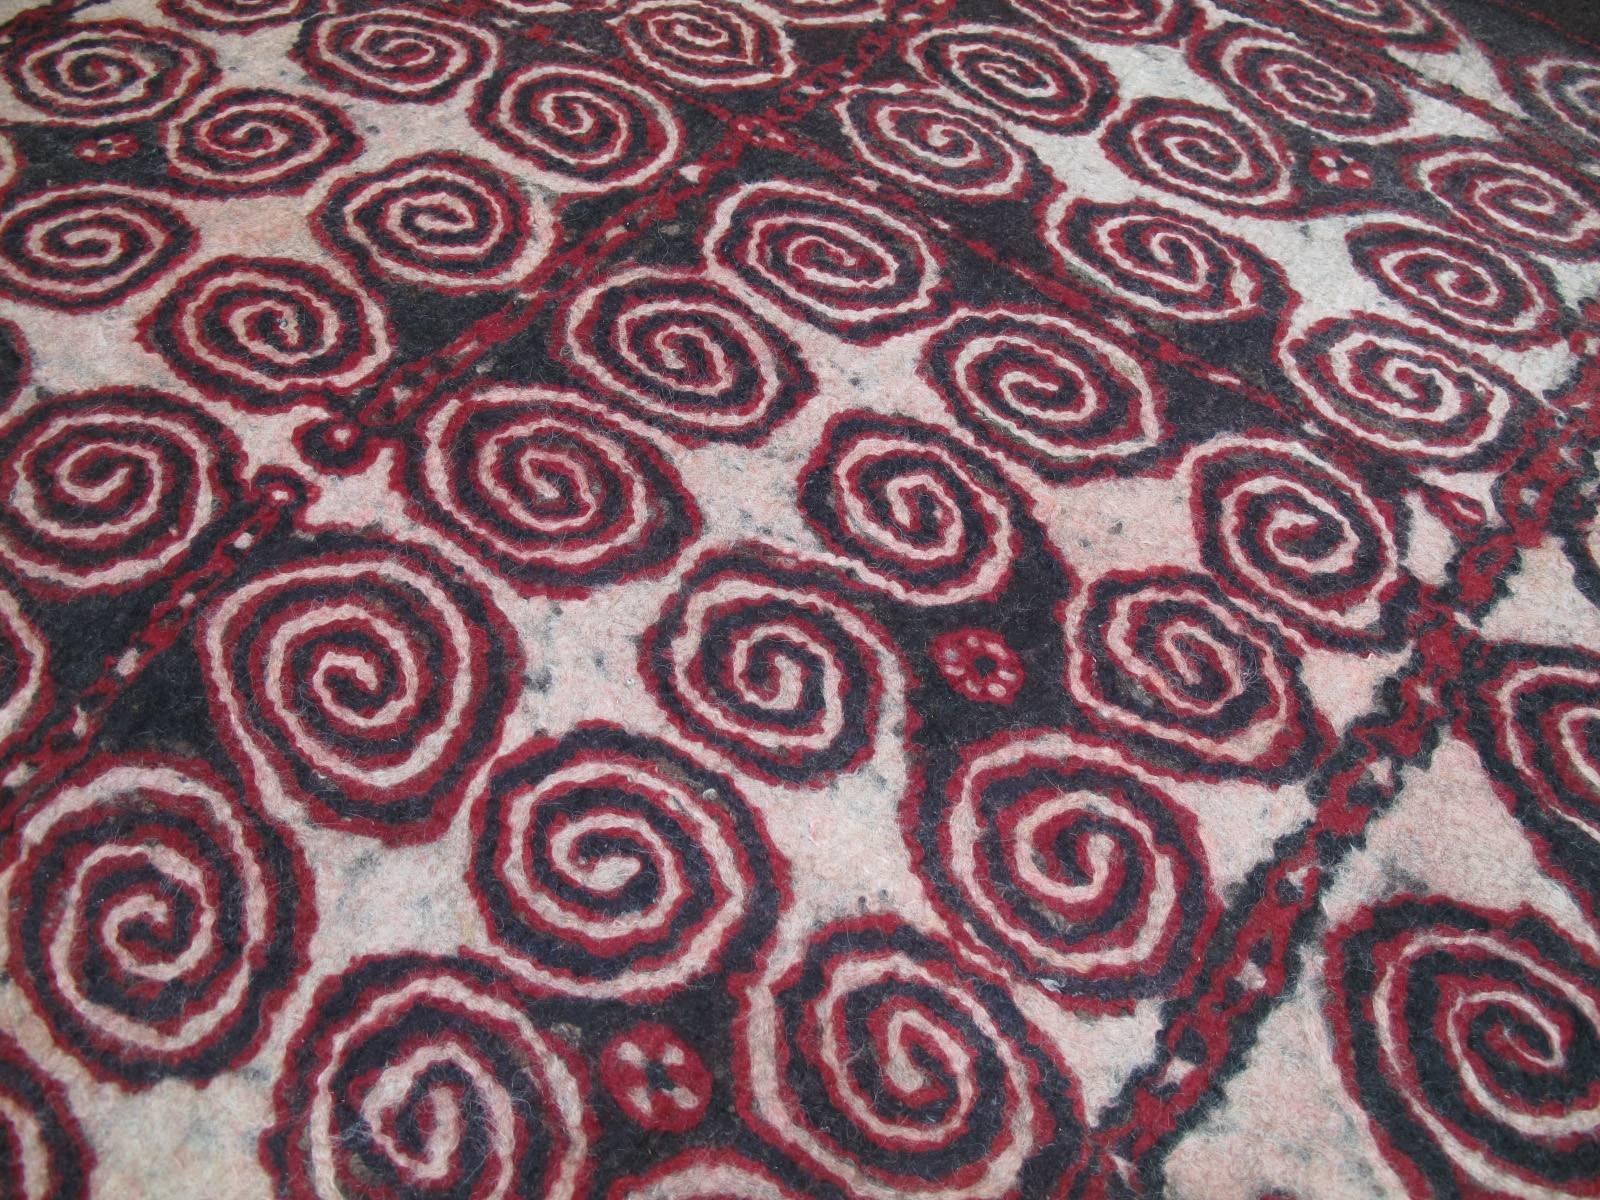 Uzbek Central Asian Felt Carpet